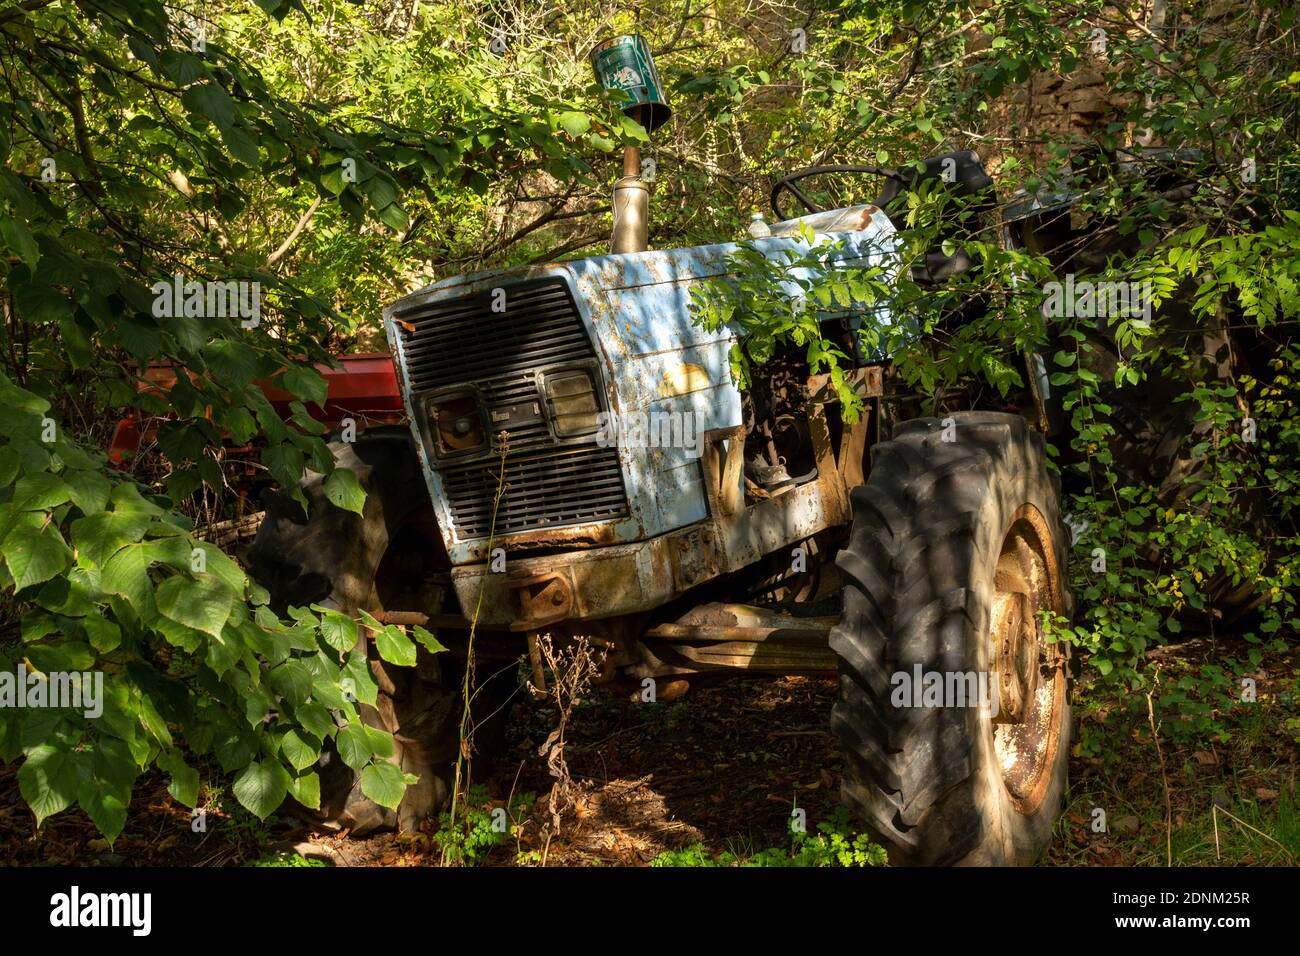 Vieux tracteur abandonné dans la nature. France. Europe. Banque D'Images